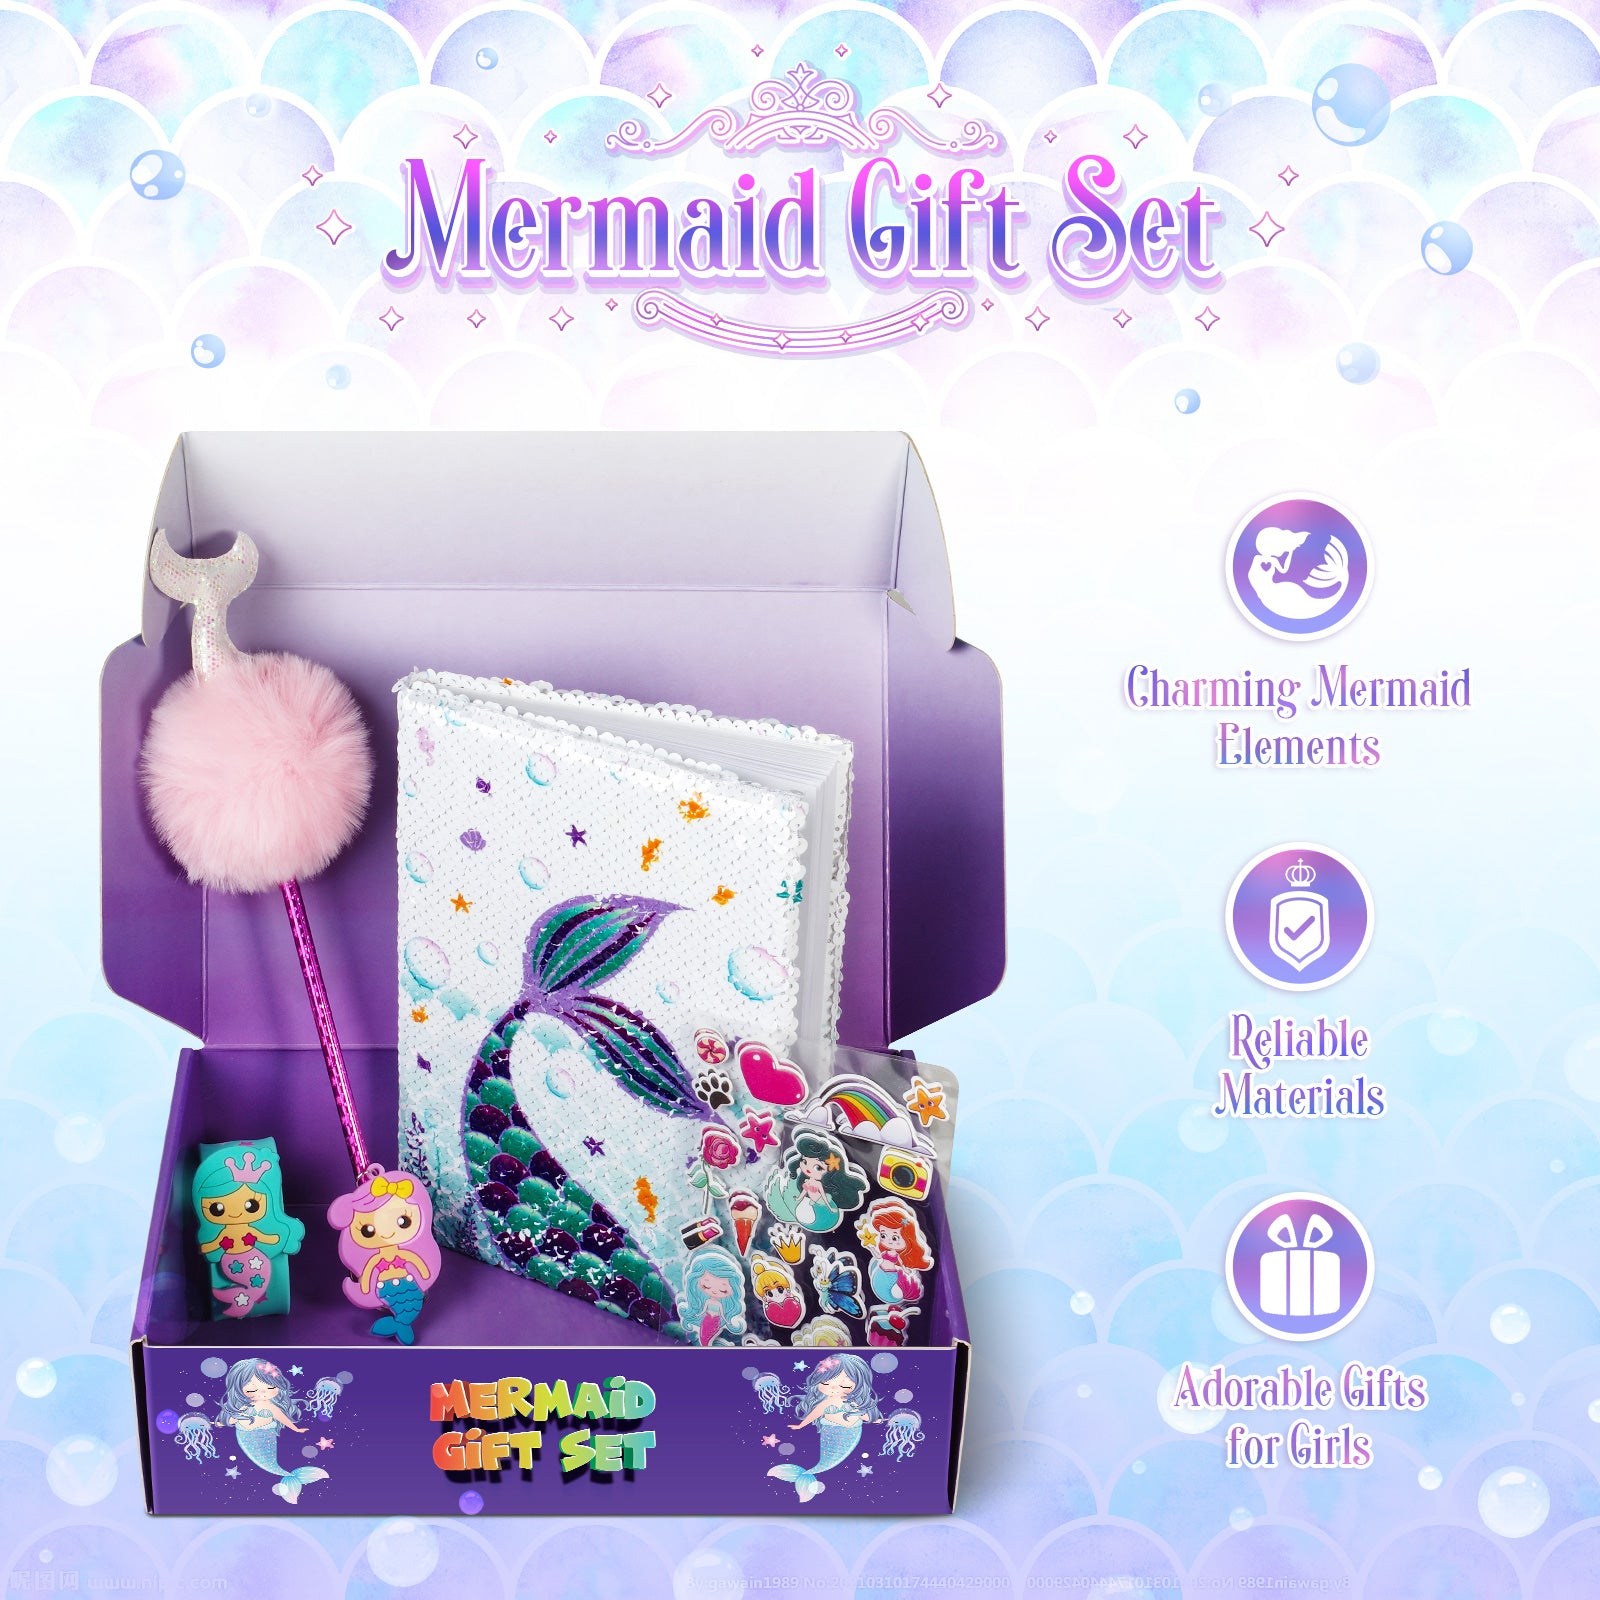 Mermaid Toys – DIY Light Up Terrarium Kit for Kids – Mermaid Gifts for Girls  | eBay